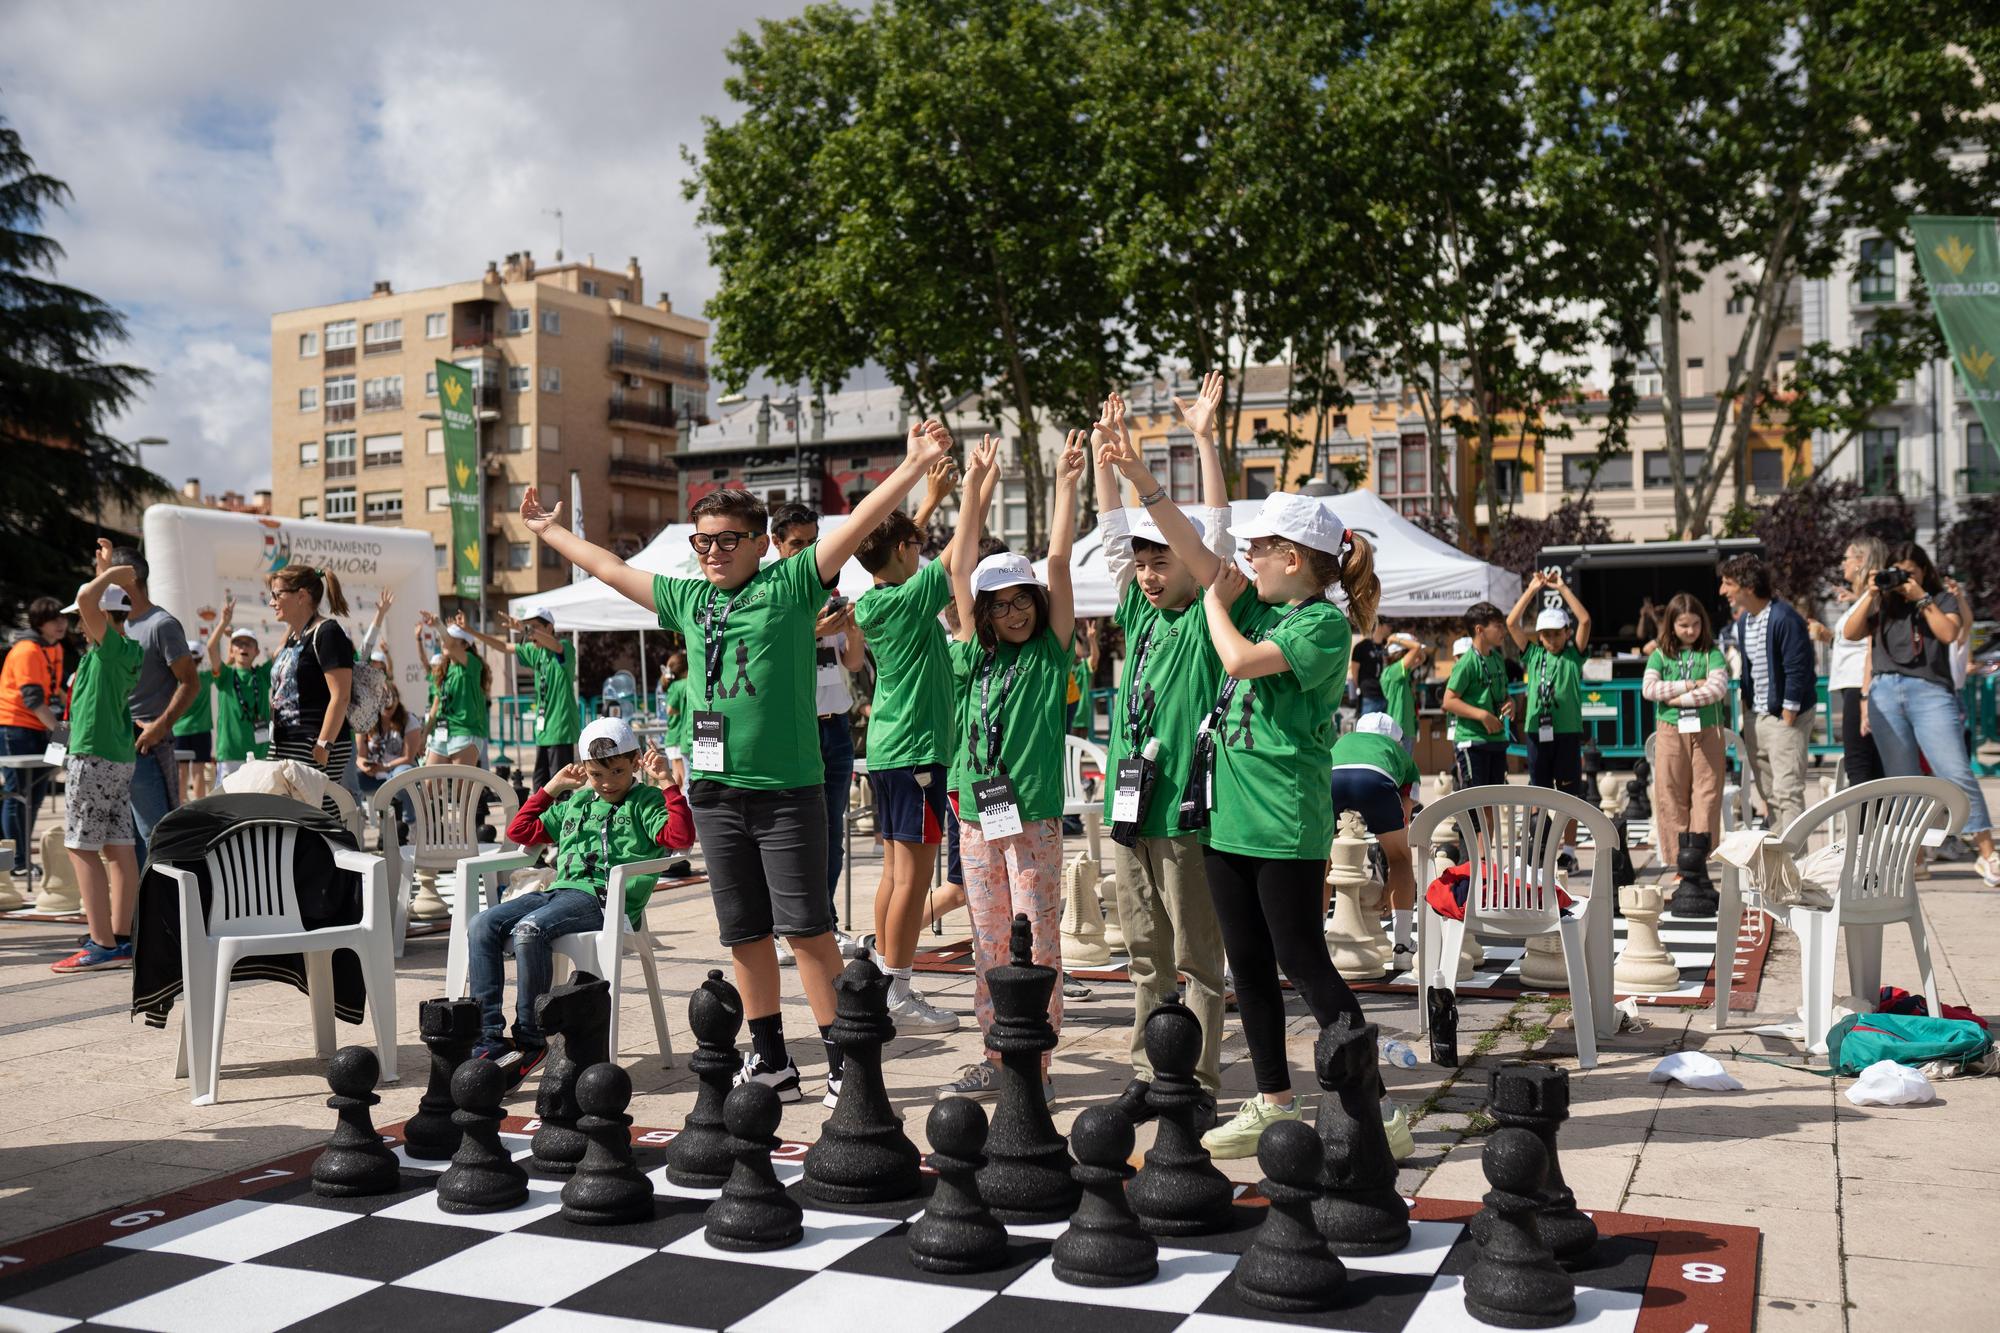 Los pequeños gigantes del ajedrez mueven ficha en Zamora